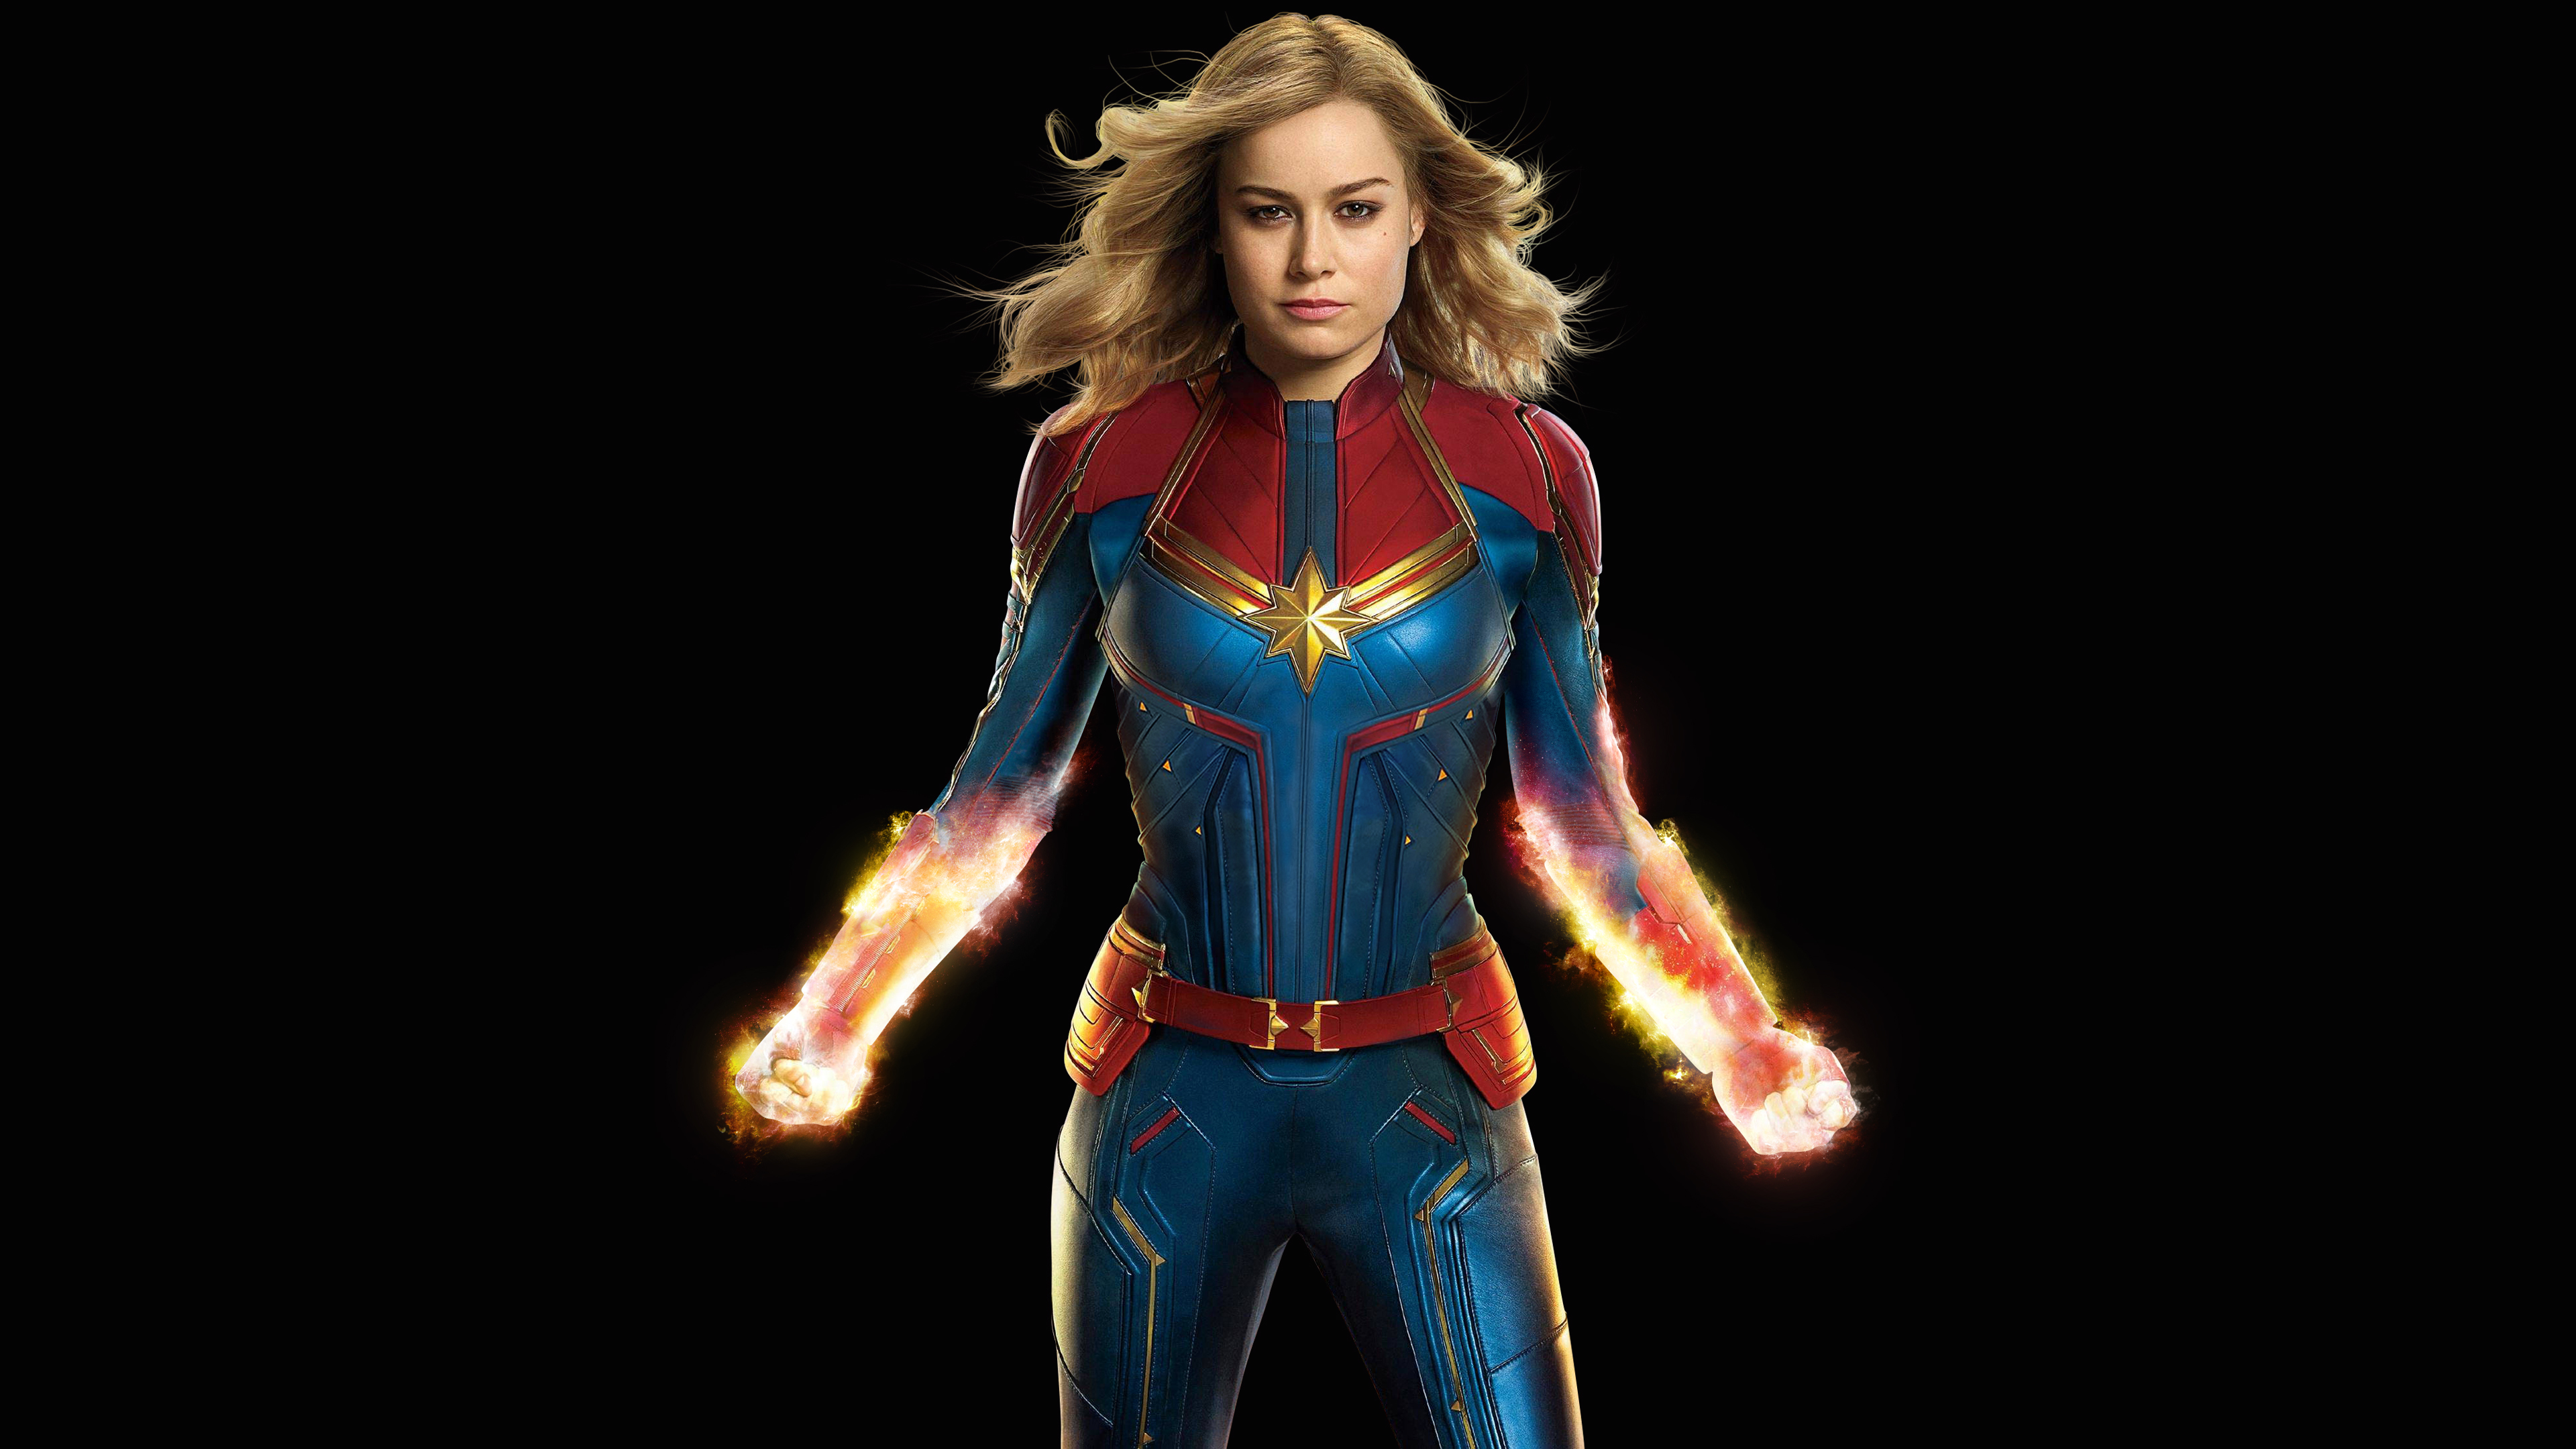 Captain Marvel Brie Larson 4k Ultra HD Wallpaper Background